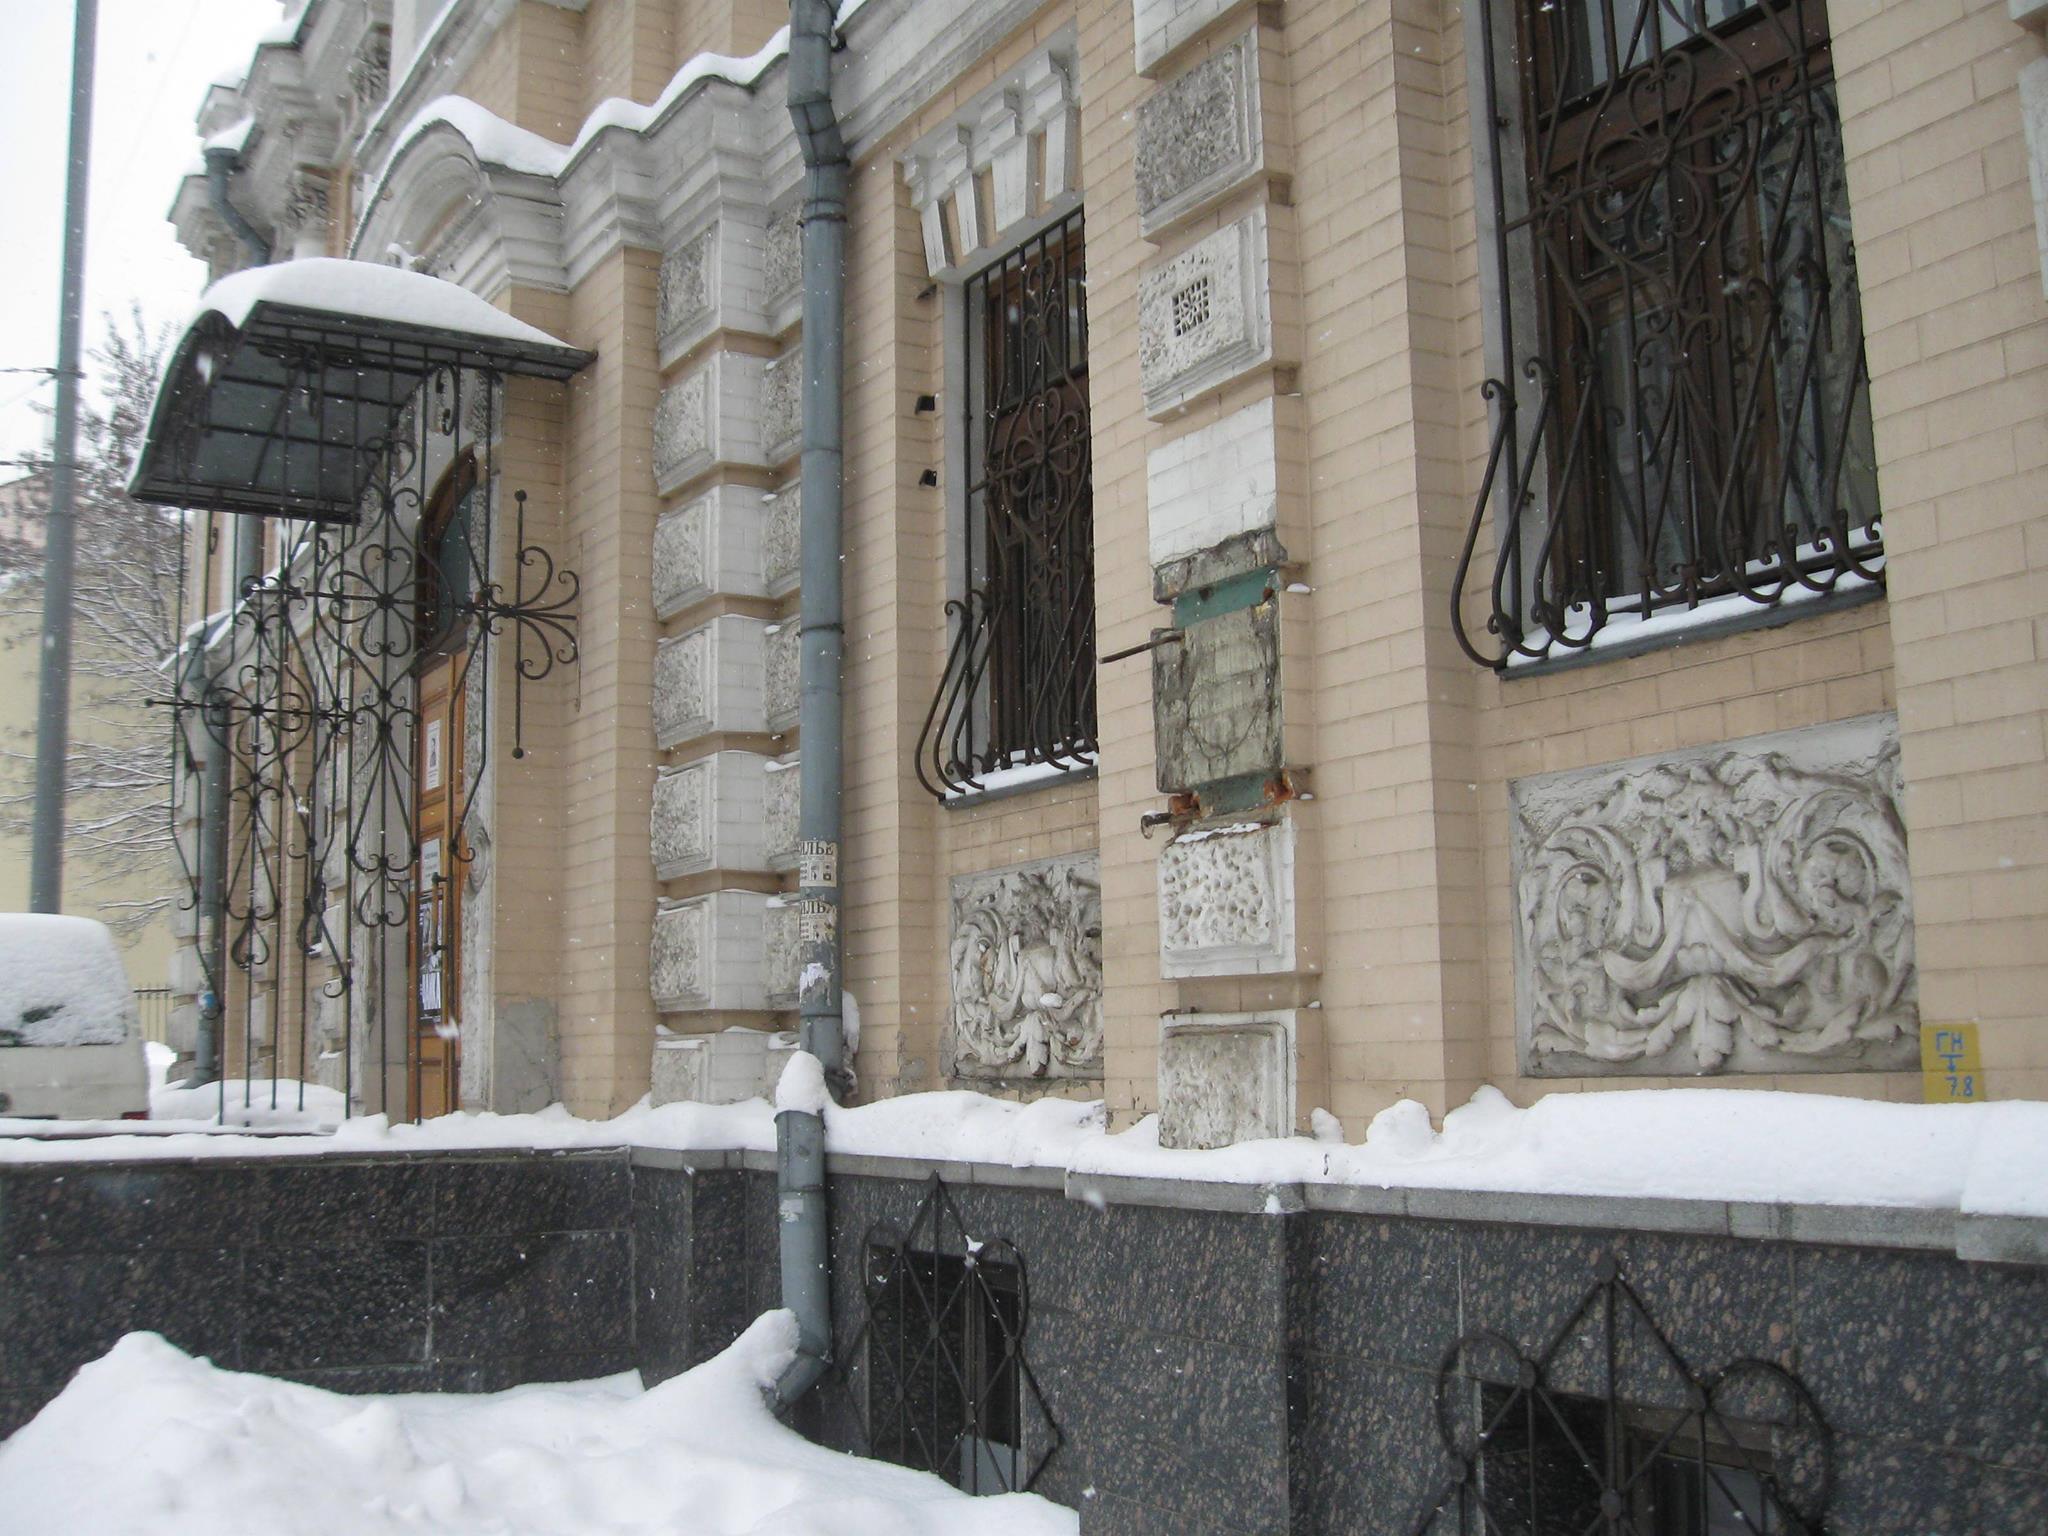 В Киеве с фасада музея Леси Украинки украли бюст поэтессы (фото)